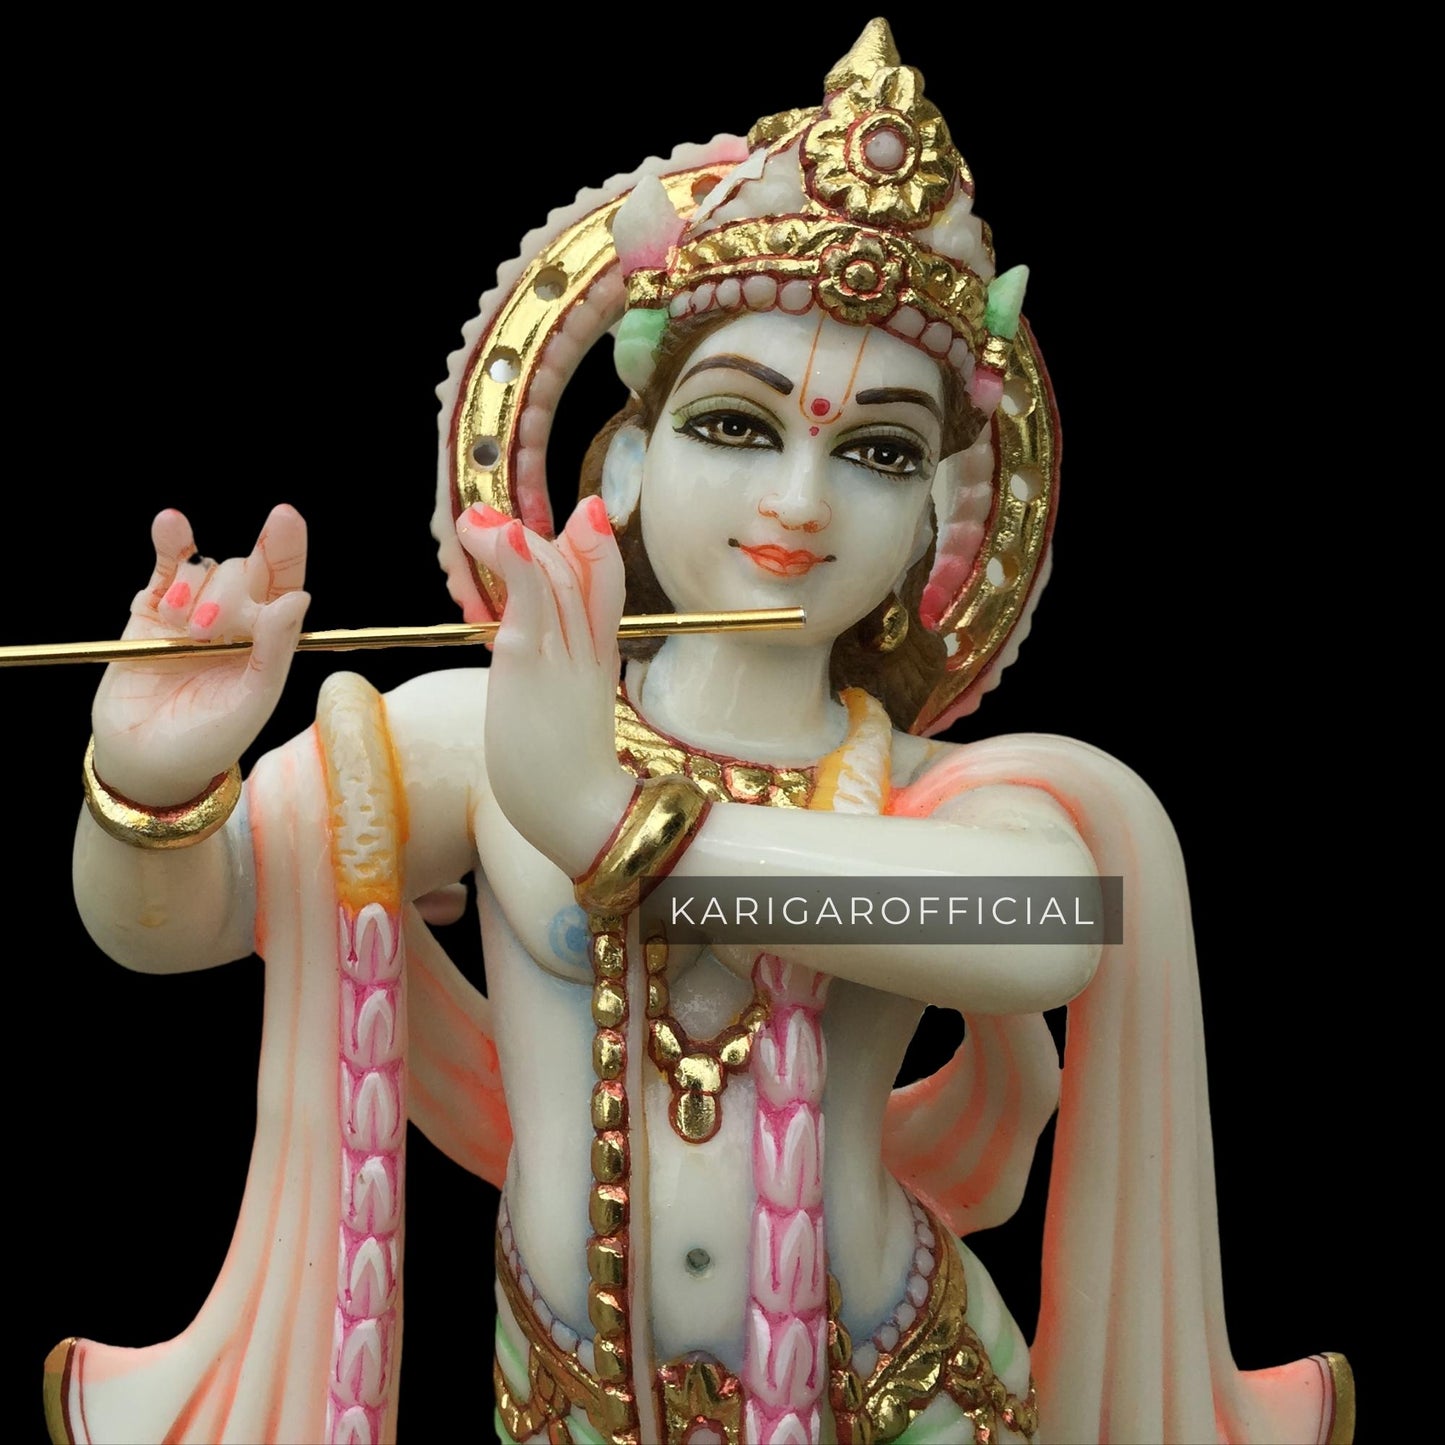 Estatua de Radha Krishna, ídolo Radha Krishna grande de mármol de 15 pulgadas, Murti de pareja de amor divino hindú, estatuilla de Murlimanohar multicolor pintada a mano, regalos especiales de aniversario de boda, decoración del templo del hogar